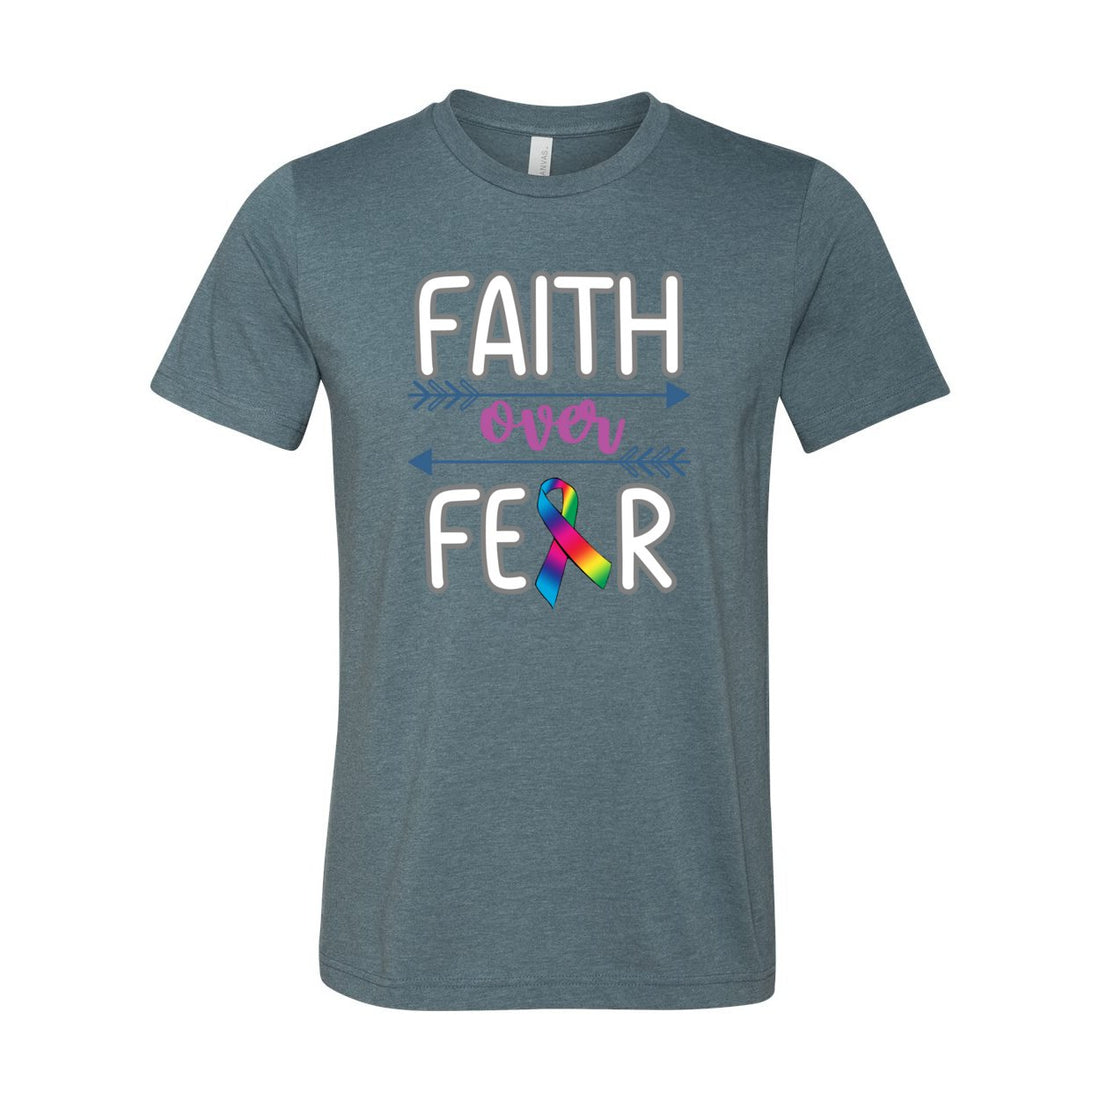 Faith Over Fear - T-Shirts - Positively Sassy - Faith Over Fear